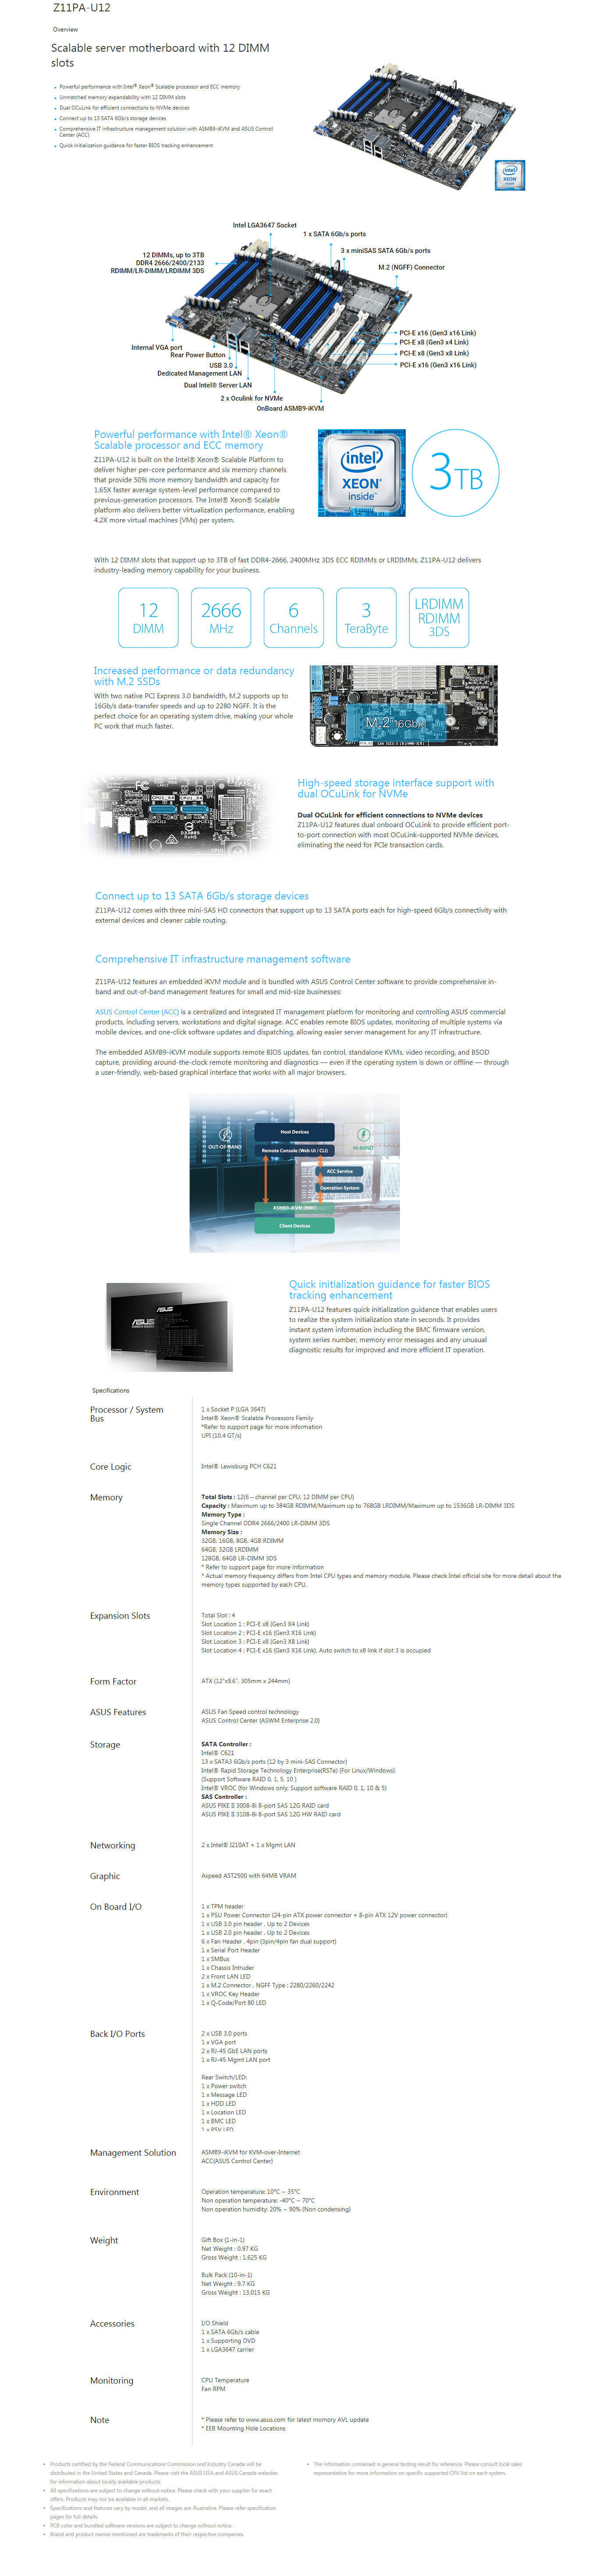  Buy Online Asus Z11PA-U12 Intel Server Motherboard